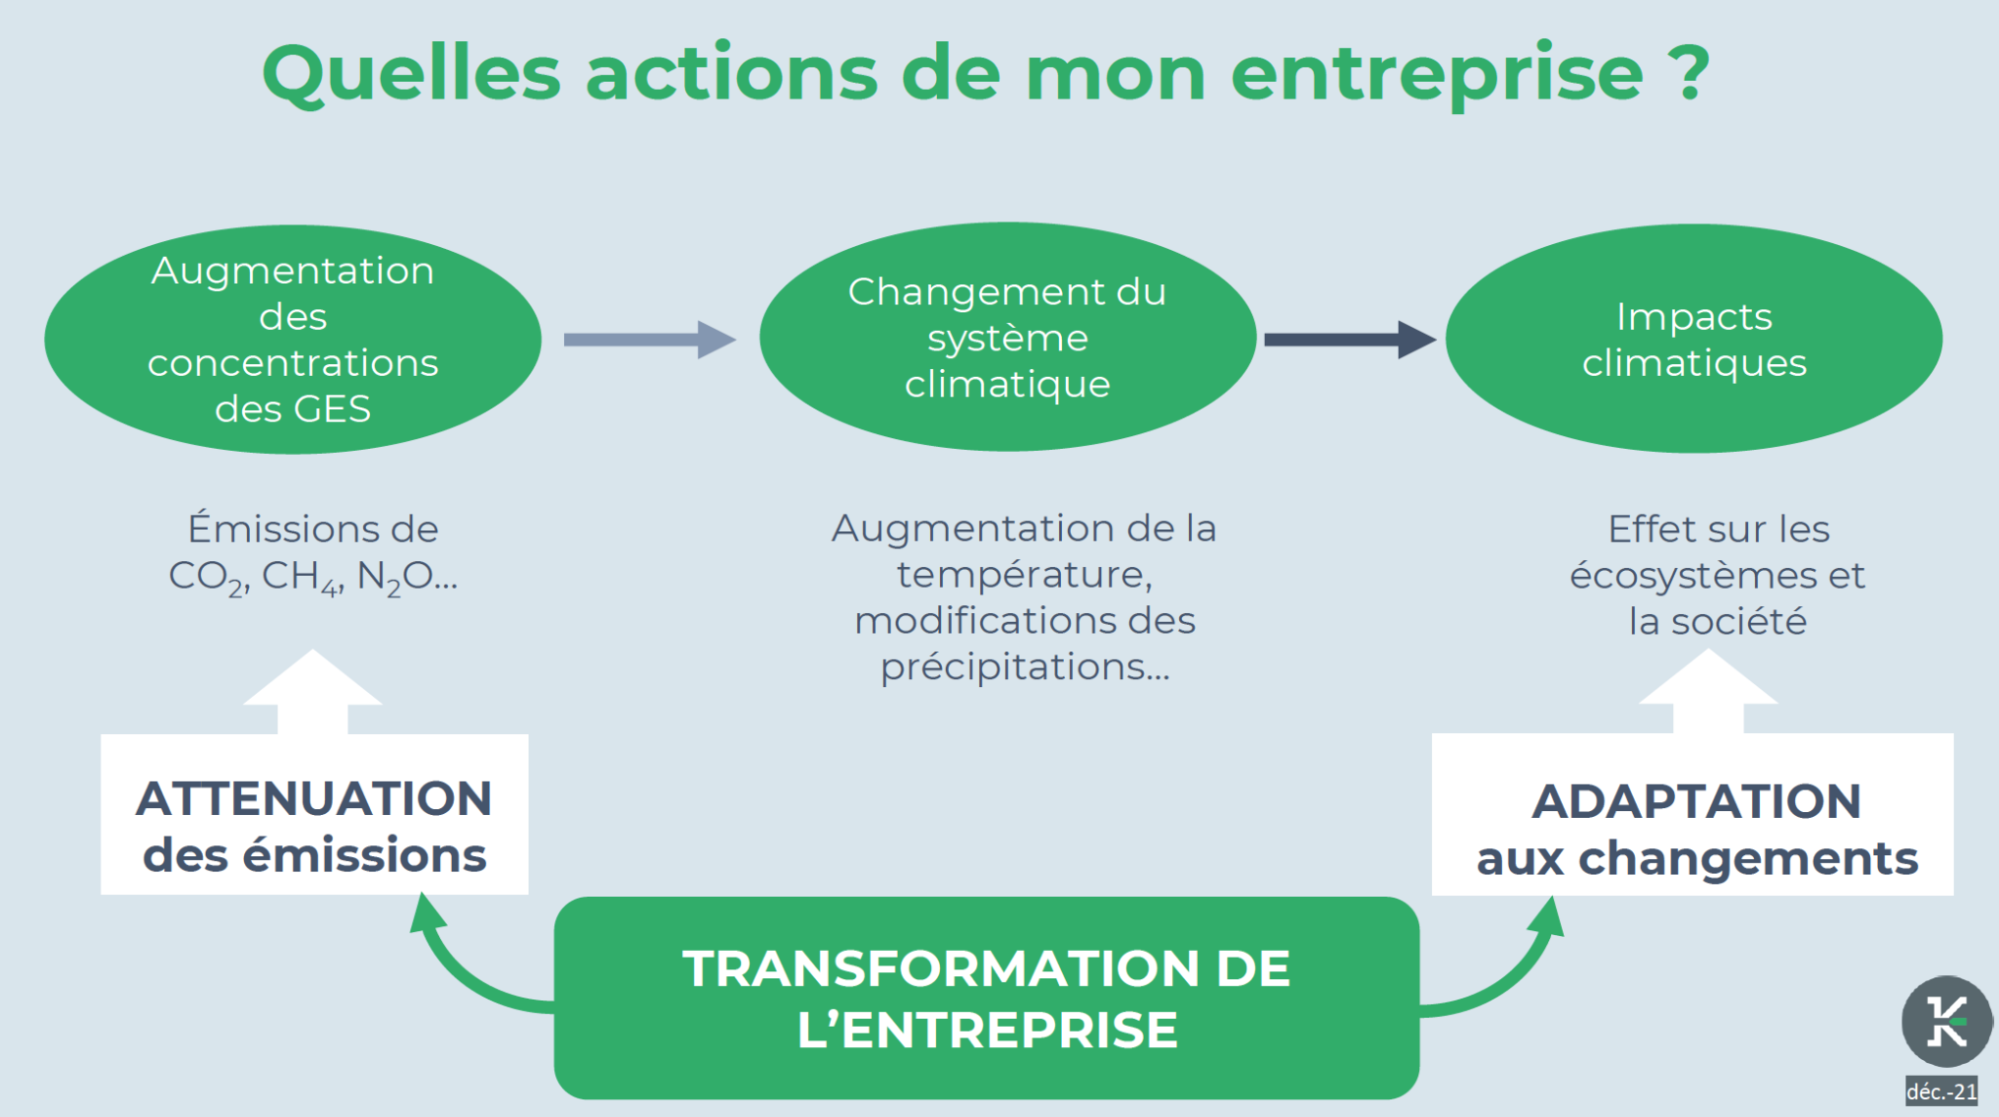 Schéma circulaire avec les 3 actions répertoriées, amenant toutes à la transformation de l'entreprise